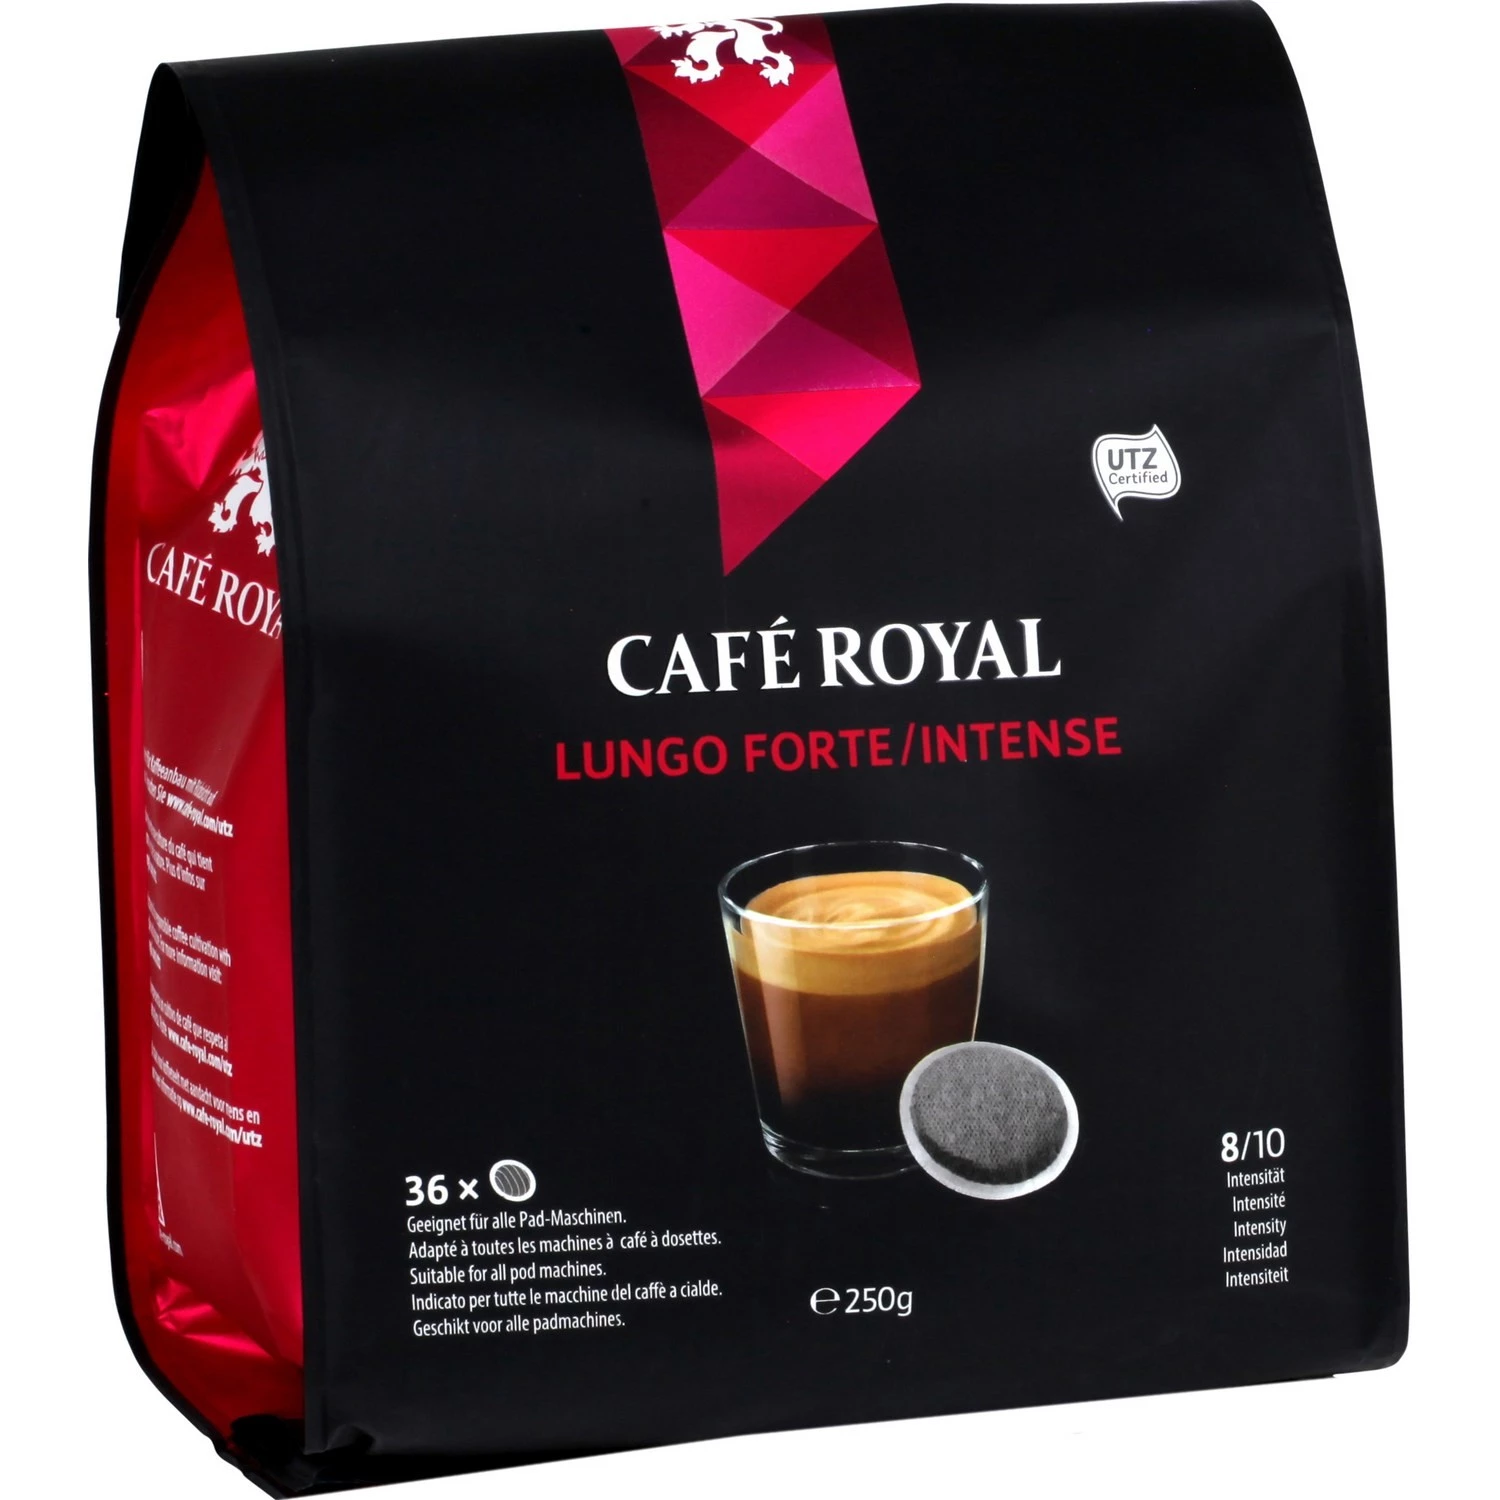 Strong & intense lungo coffee x36 pods 250g - CAFÉ ROYAL